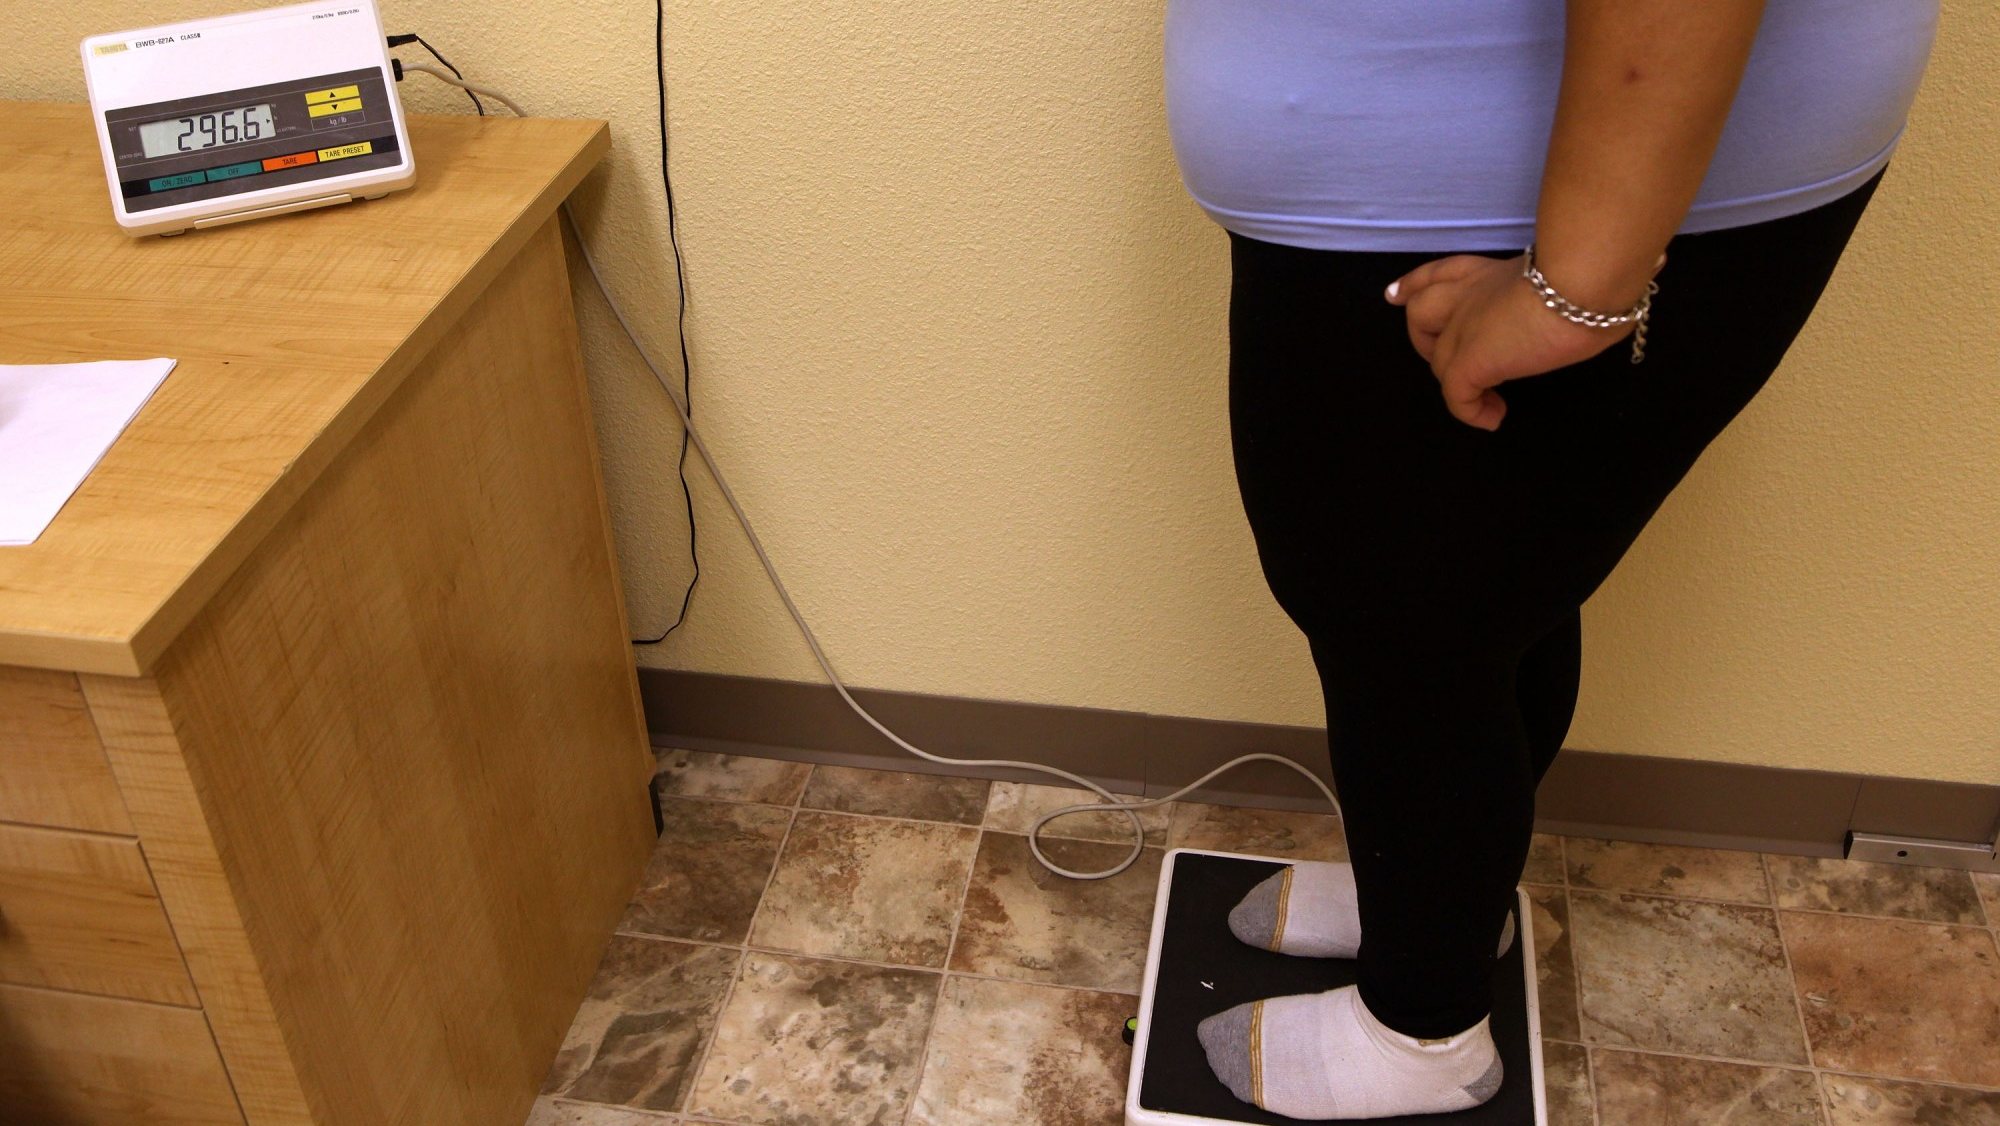 A obesidade abdominal traduz-se numa maior circunferência da cintura